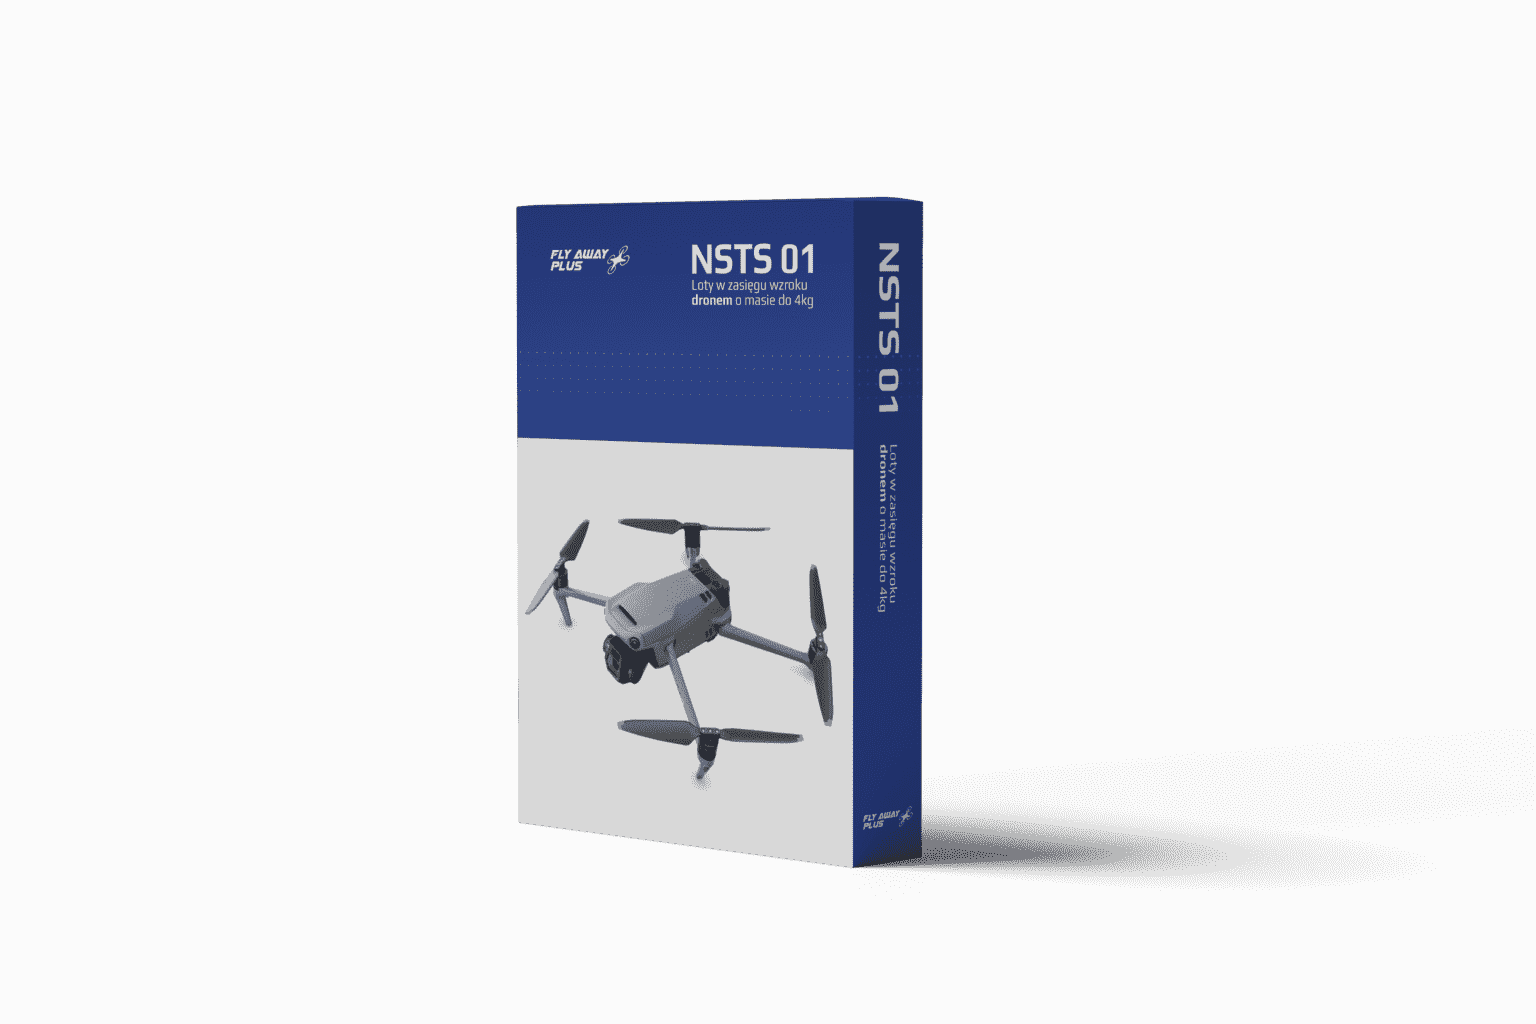 drony